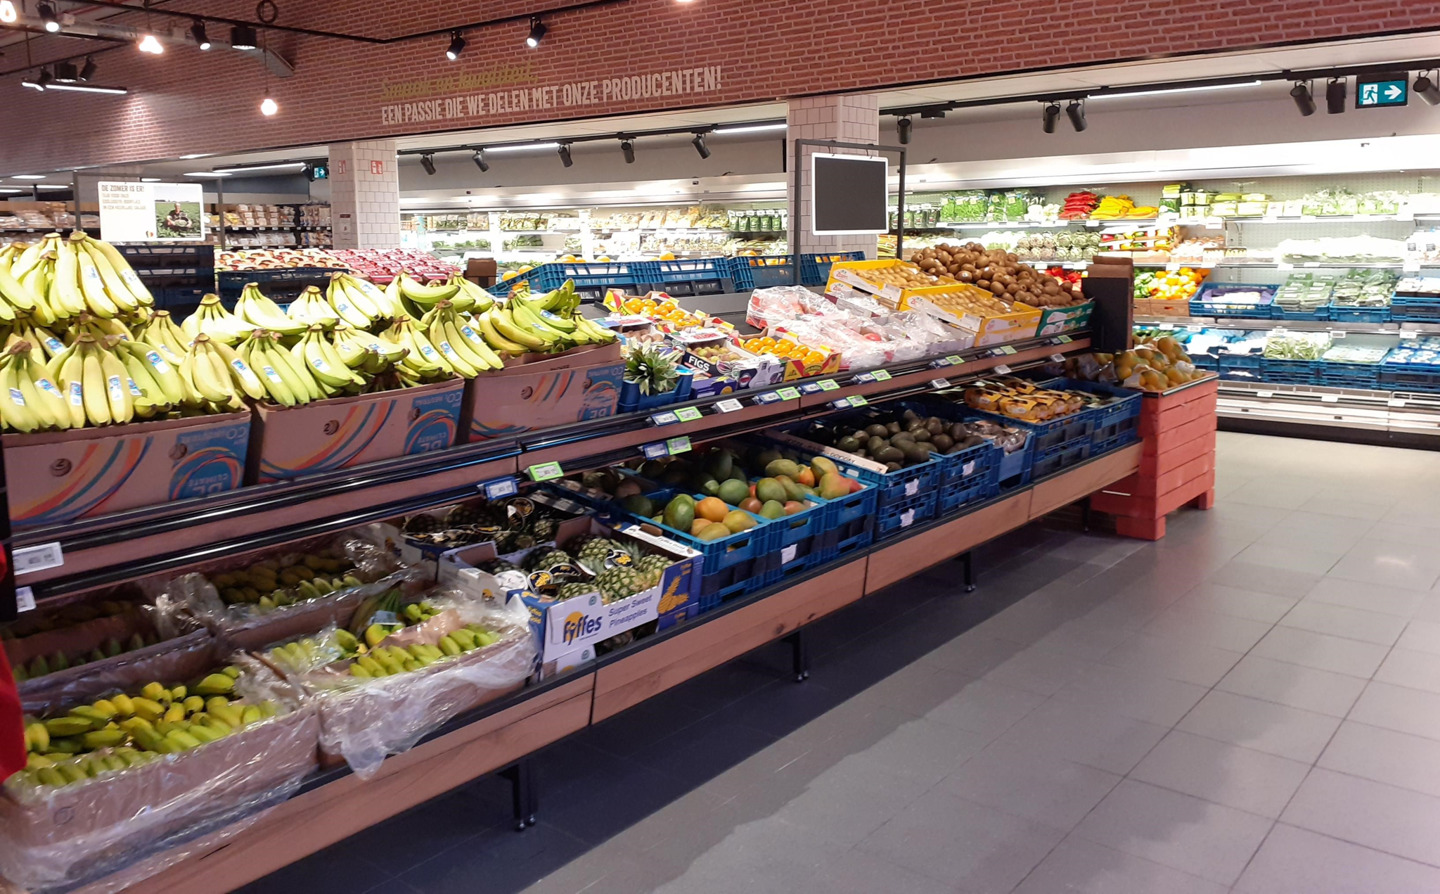 Delhaizesupermarkt Gent watersport volledig vernieuwd volgens gloednieuw supermarktconcept